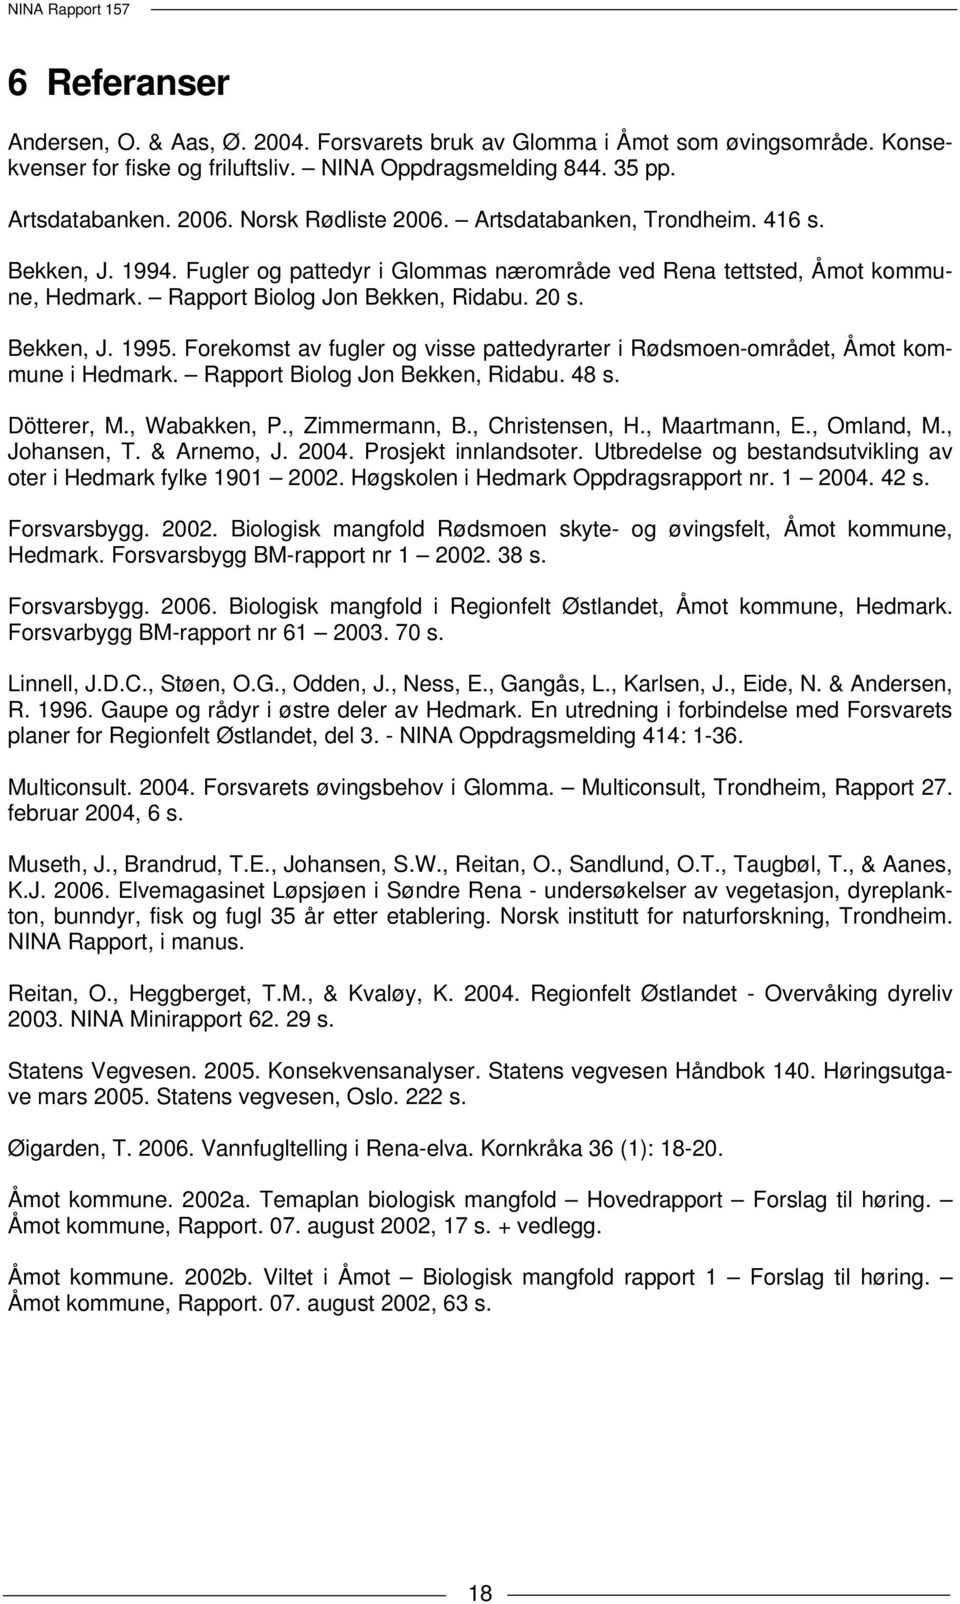 Bekken, J. 1995. Forekomst av fugler og visse pattedyrarter i Rødsmoen-området, Åmot kommune i Hedmark. Rapport Biolog Jon Bekken, Ridabu. 48 s. Dötterer, M., Wabakken, P., Zimmermann, B.